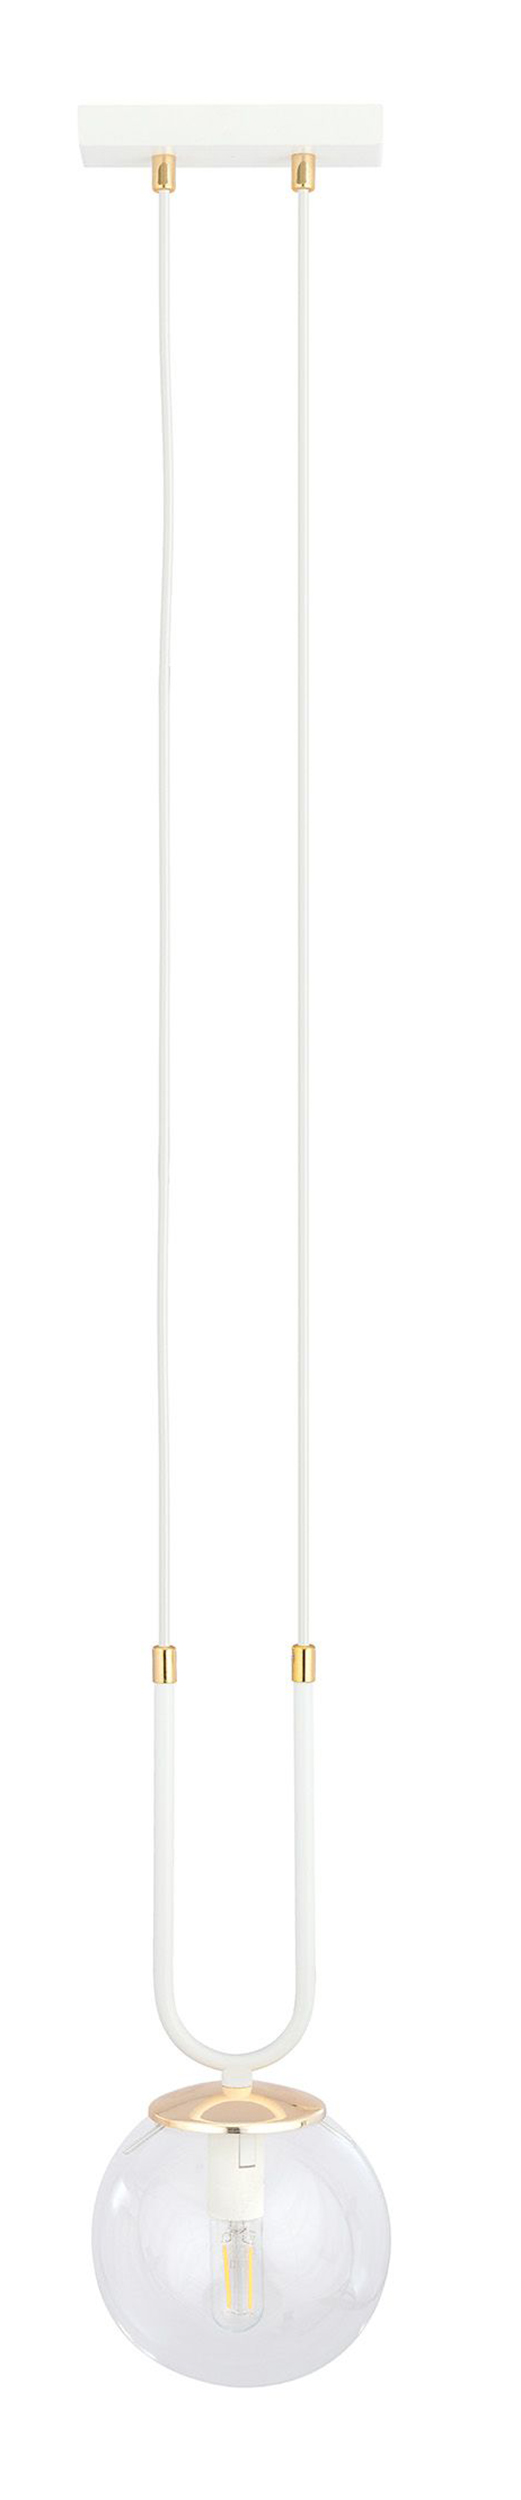 Lampa wisząca Greerlan biało-transparentna x1 - zdjęcie 1